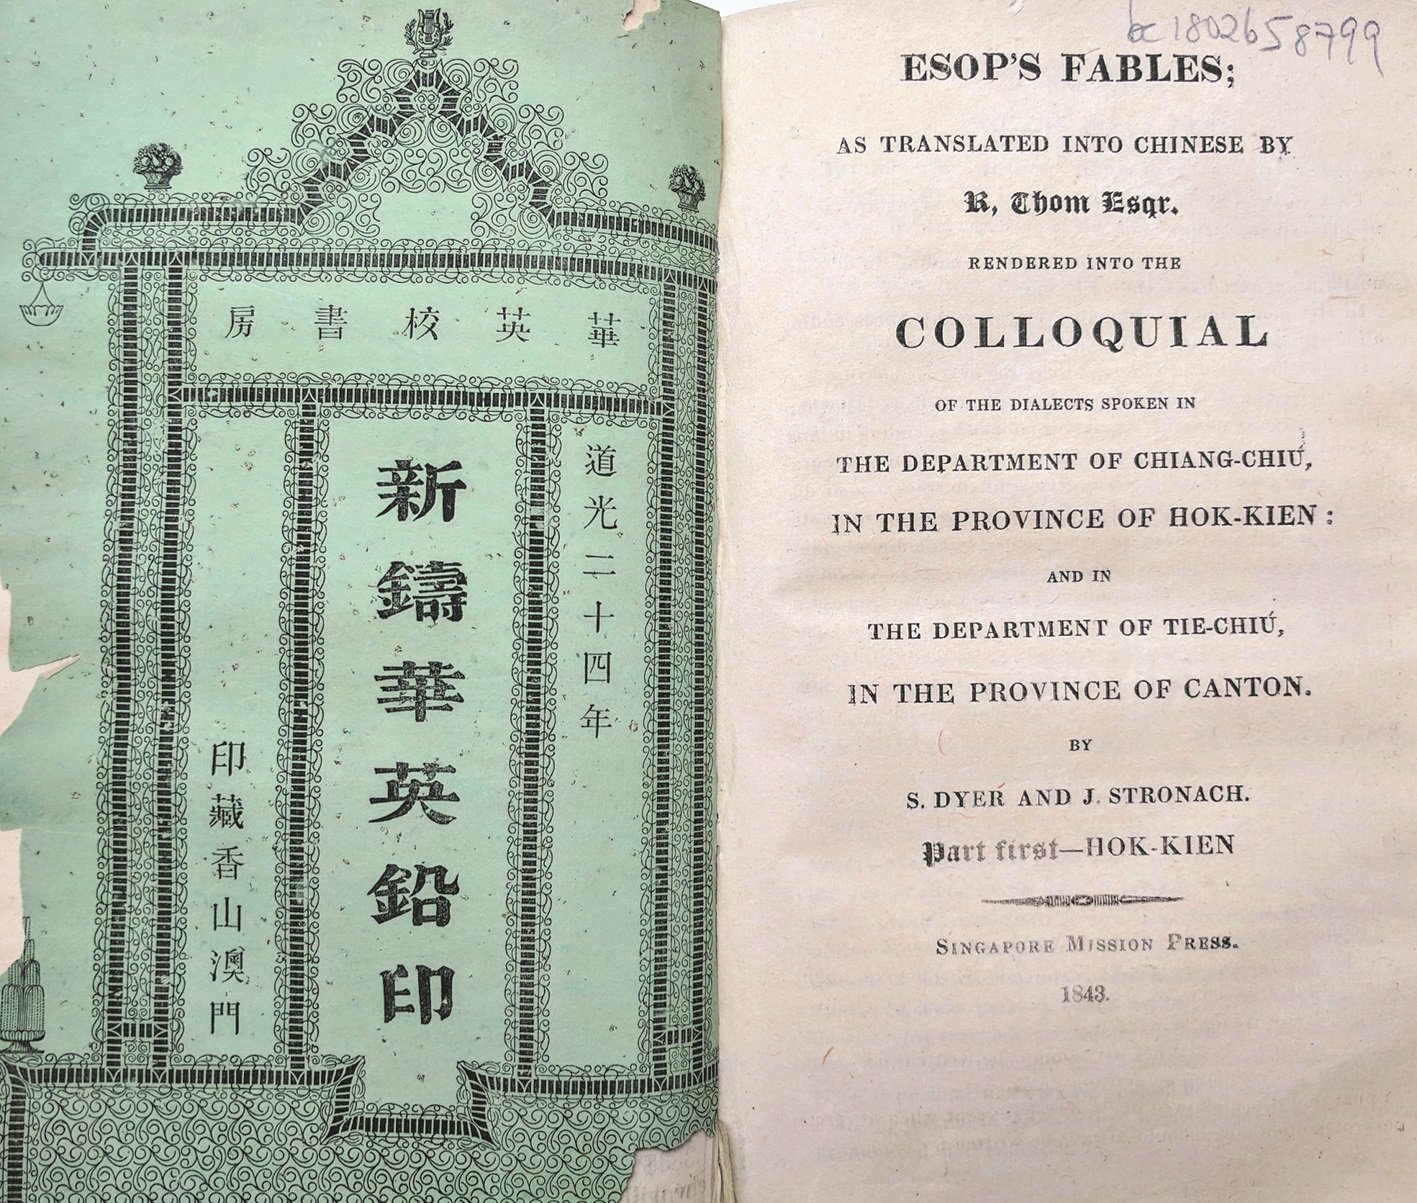 在1919年“白话文运动”推行以前，中国各地民间都发展出各自的白话文，以书写口头语言。图为世界首部以拼音文字书写的汉语（福建话、潮州话）翻译文学《伊索》（1843年在新加坡出版）。